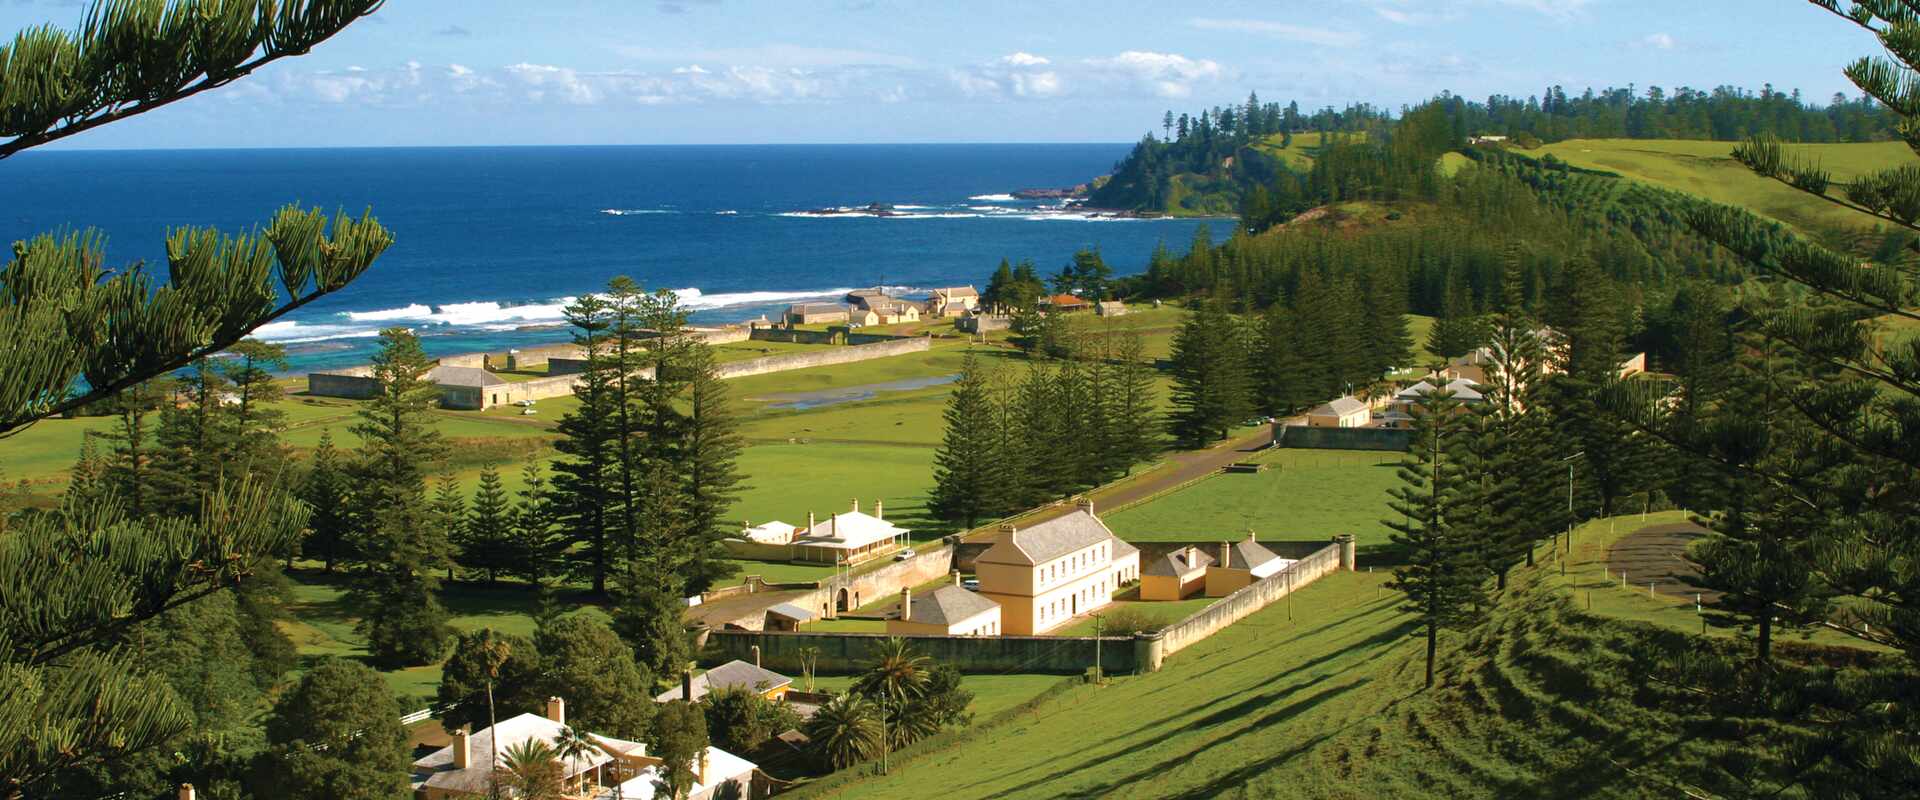 View of Heritage Buildings on Norfolk Island, Australia